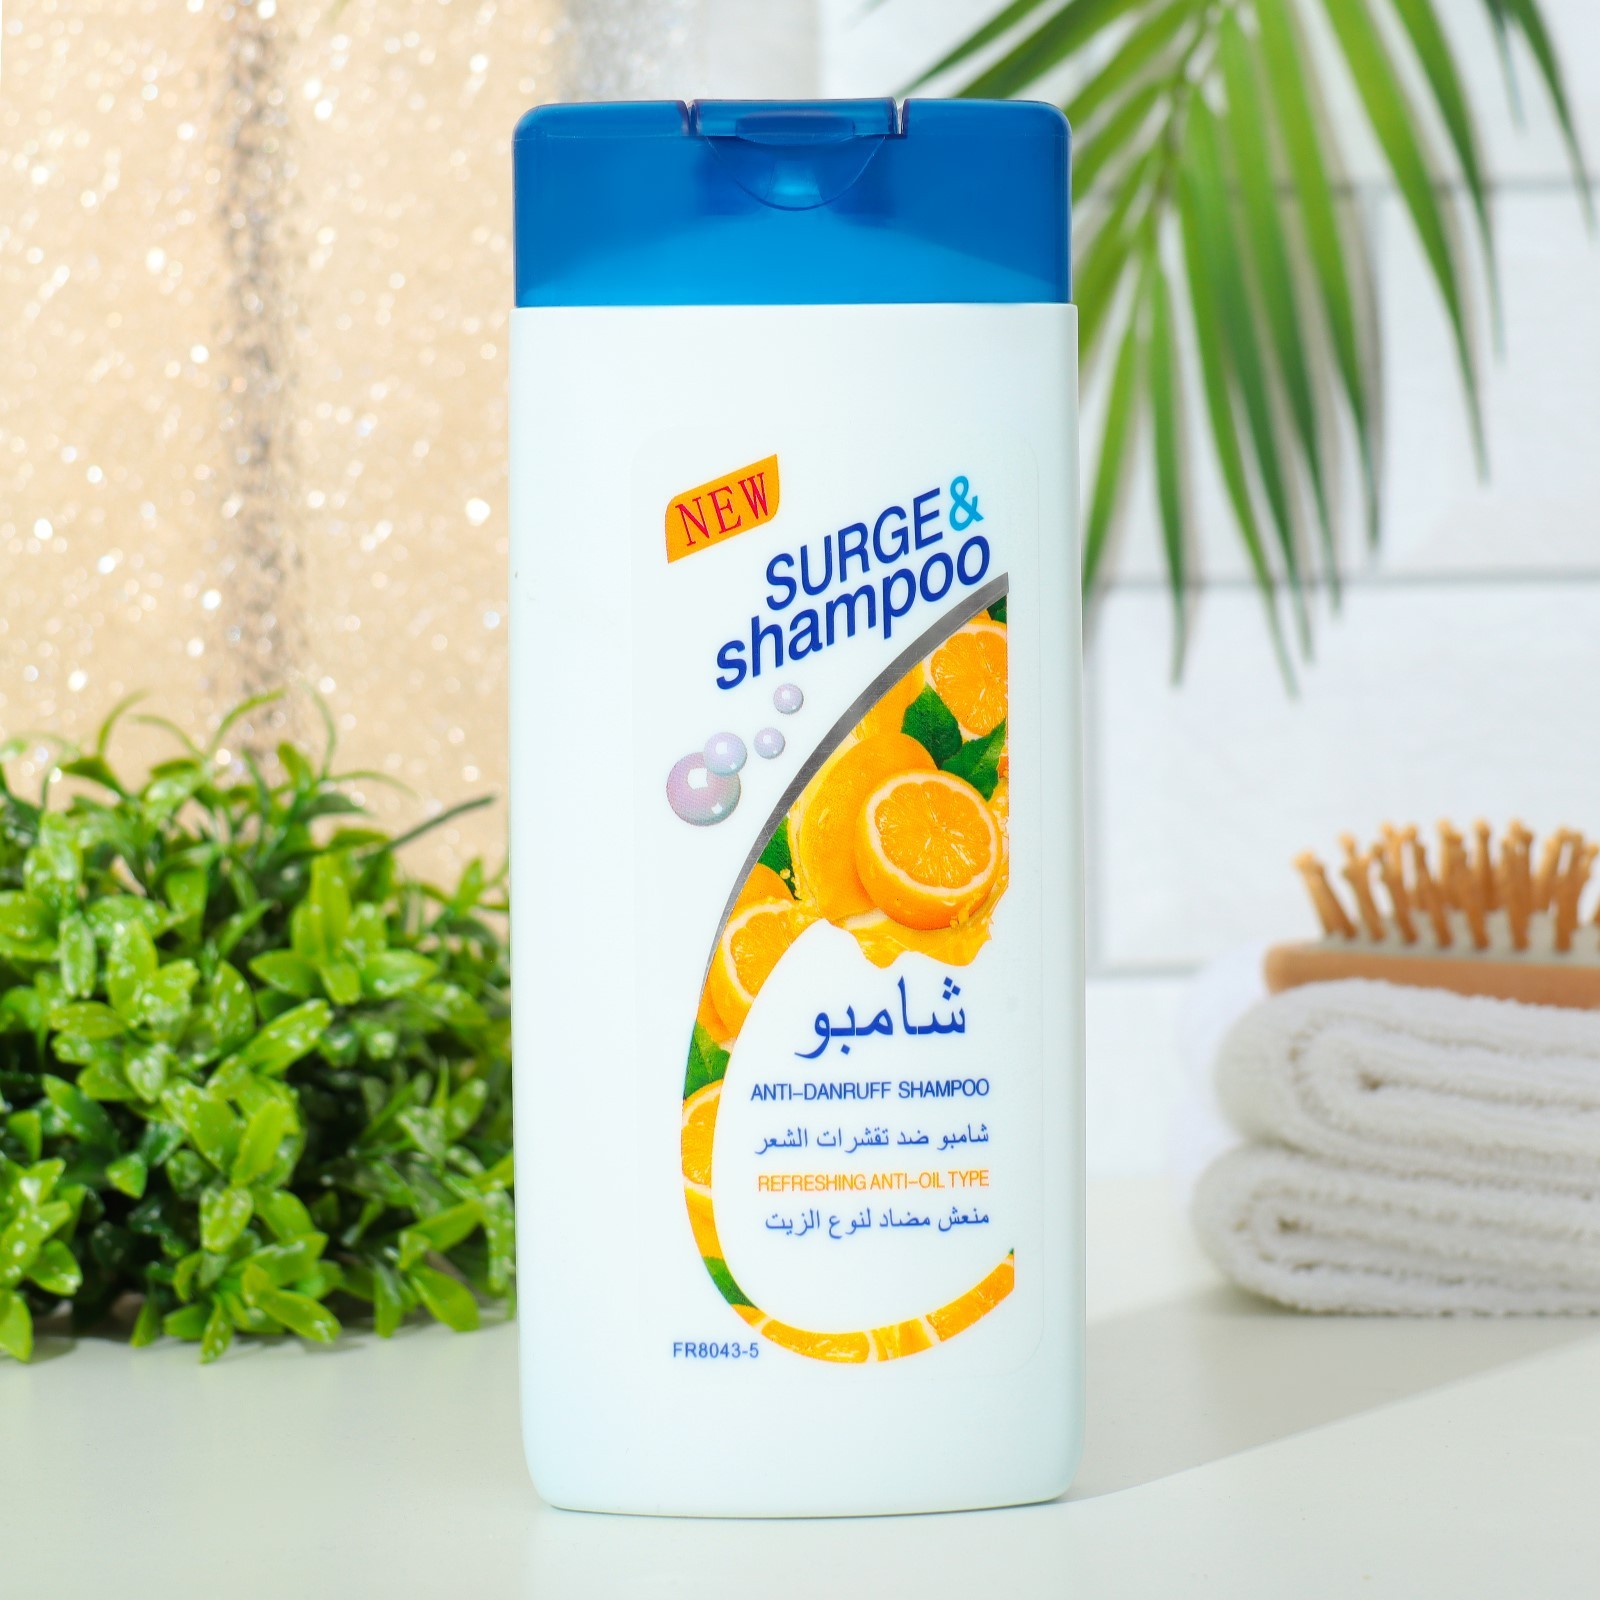 Шампунь Surge&shampoo для волос с лимоном 400 мл